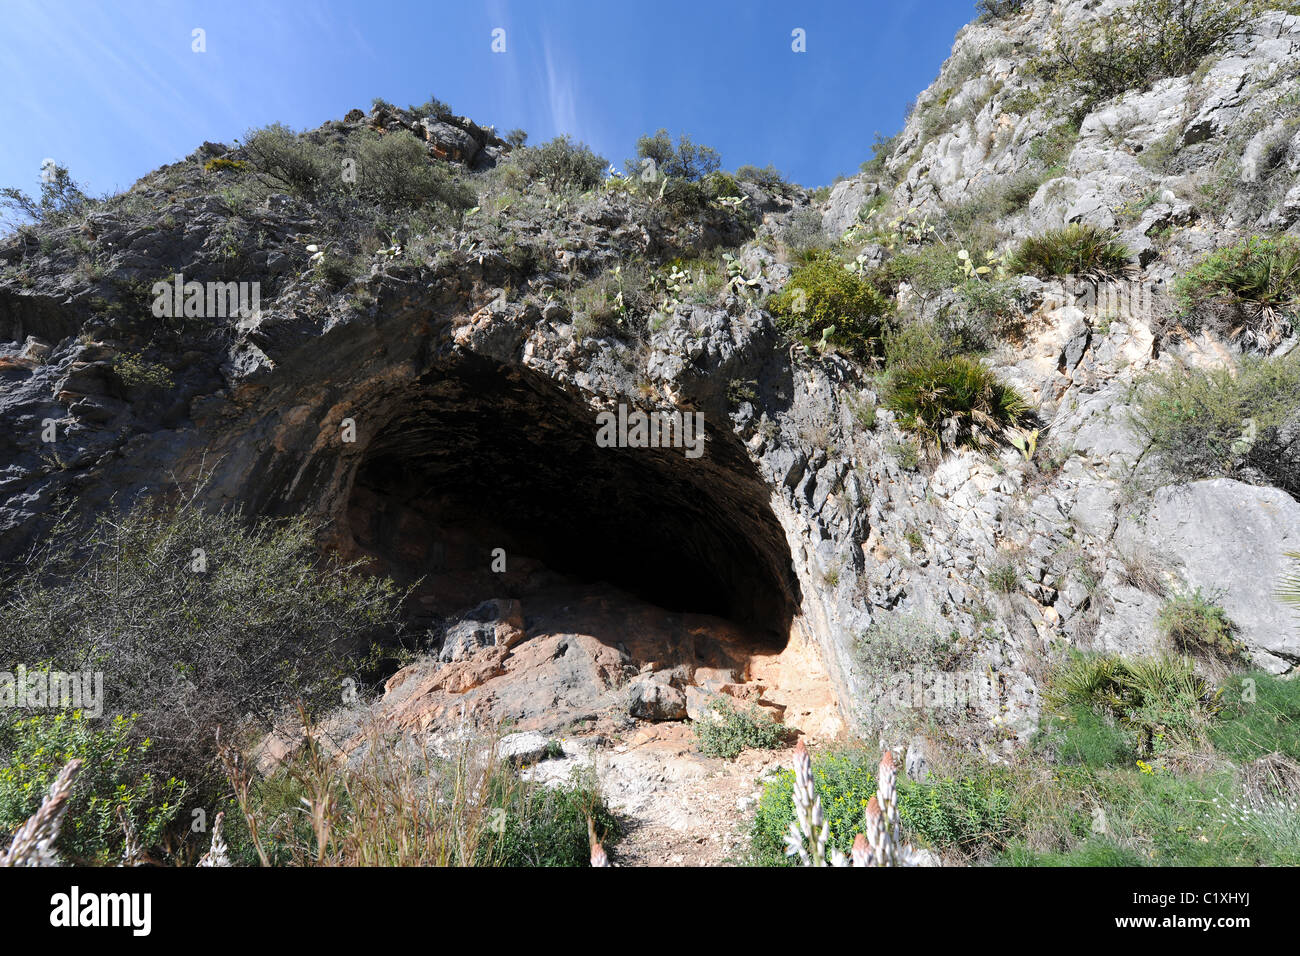 En el sitio de cueva Esquema Macro) arte rupestre, Pla de petracos, Castell de Castells, Marina Alta, Alicante Prov. Valencia, España Foto de stock